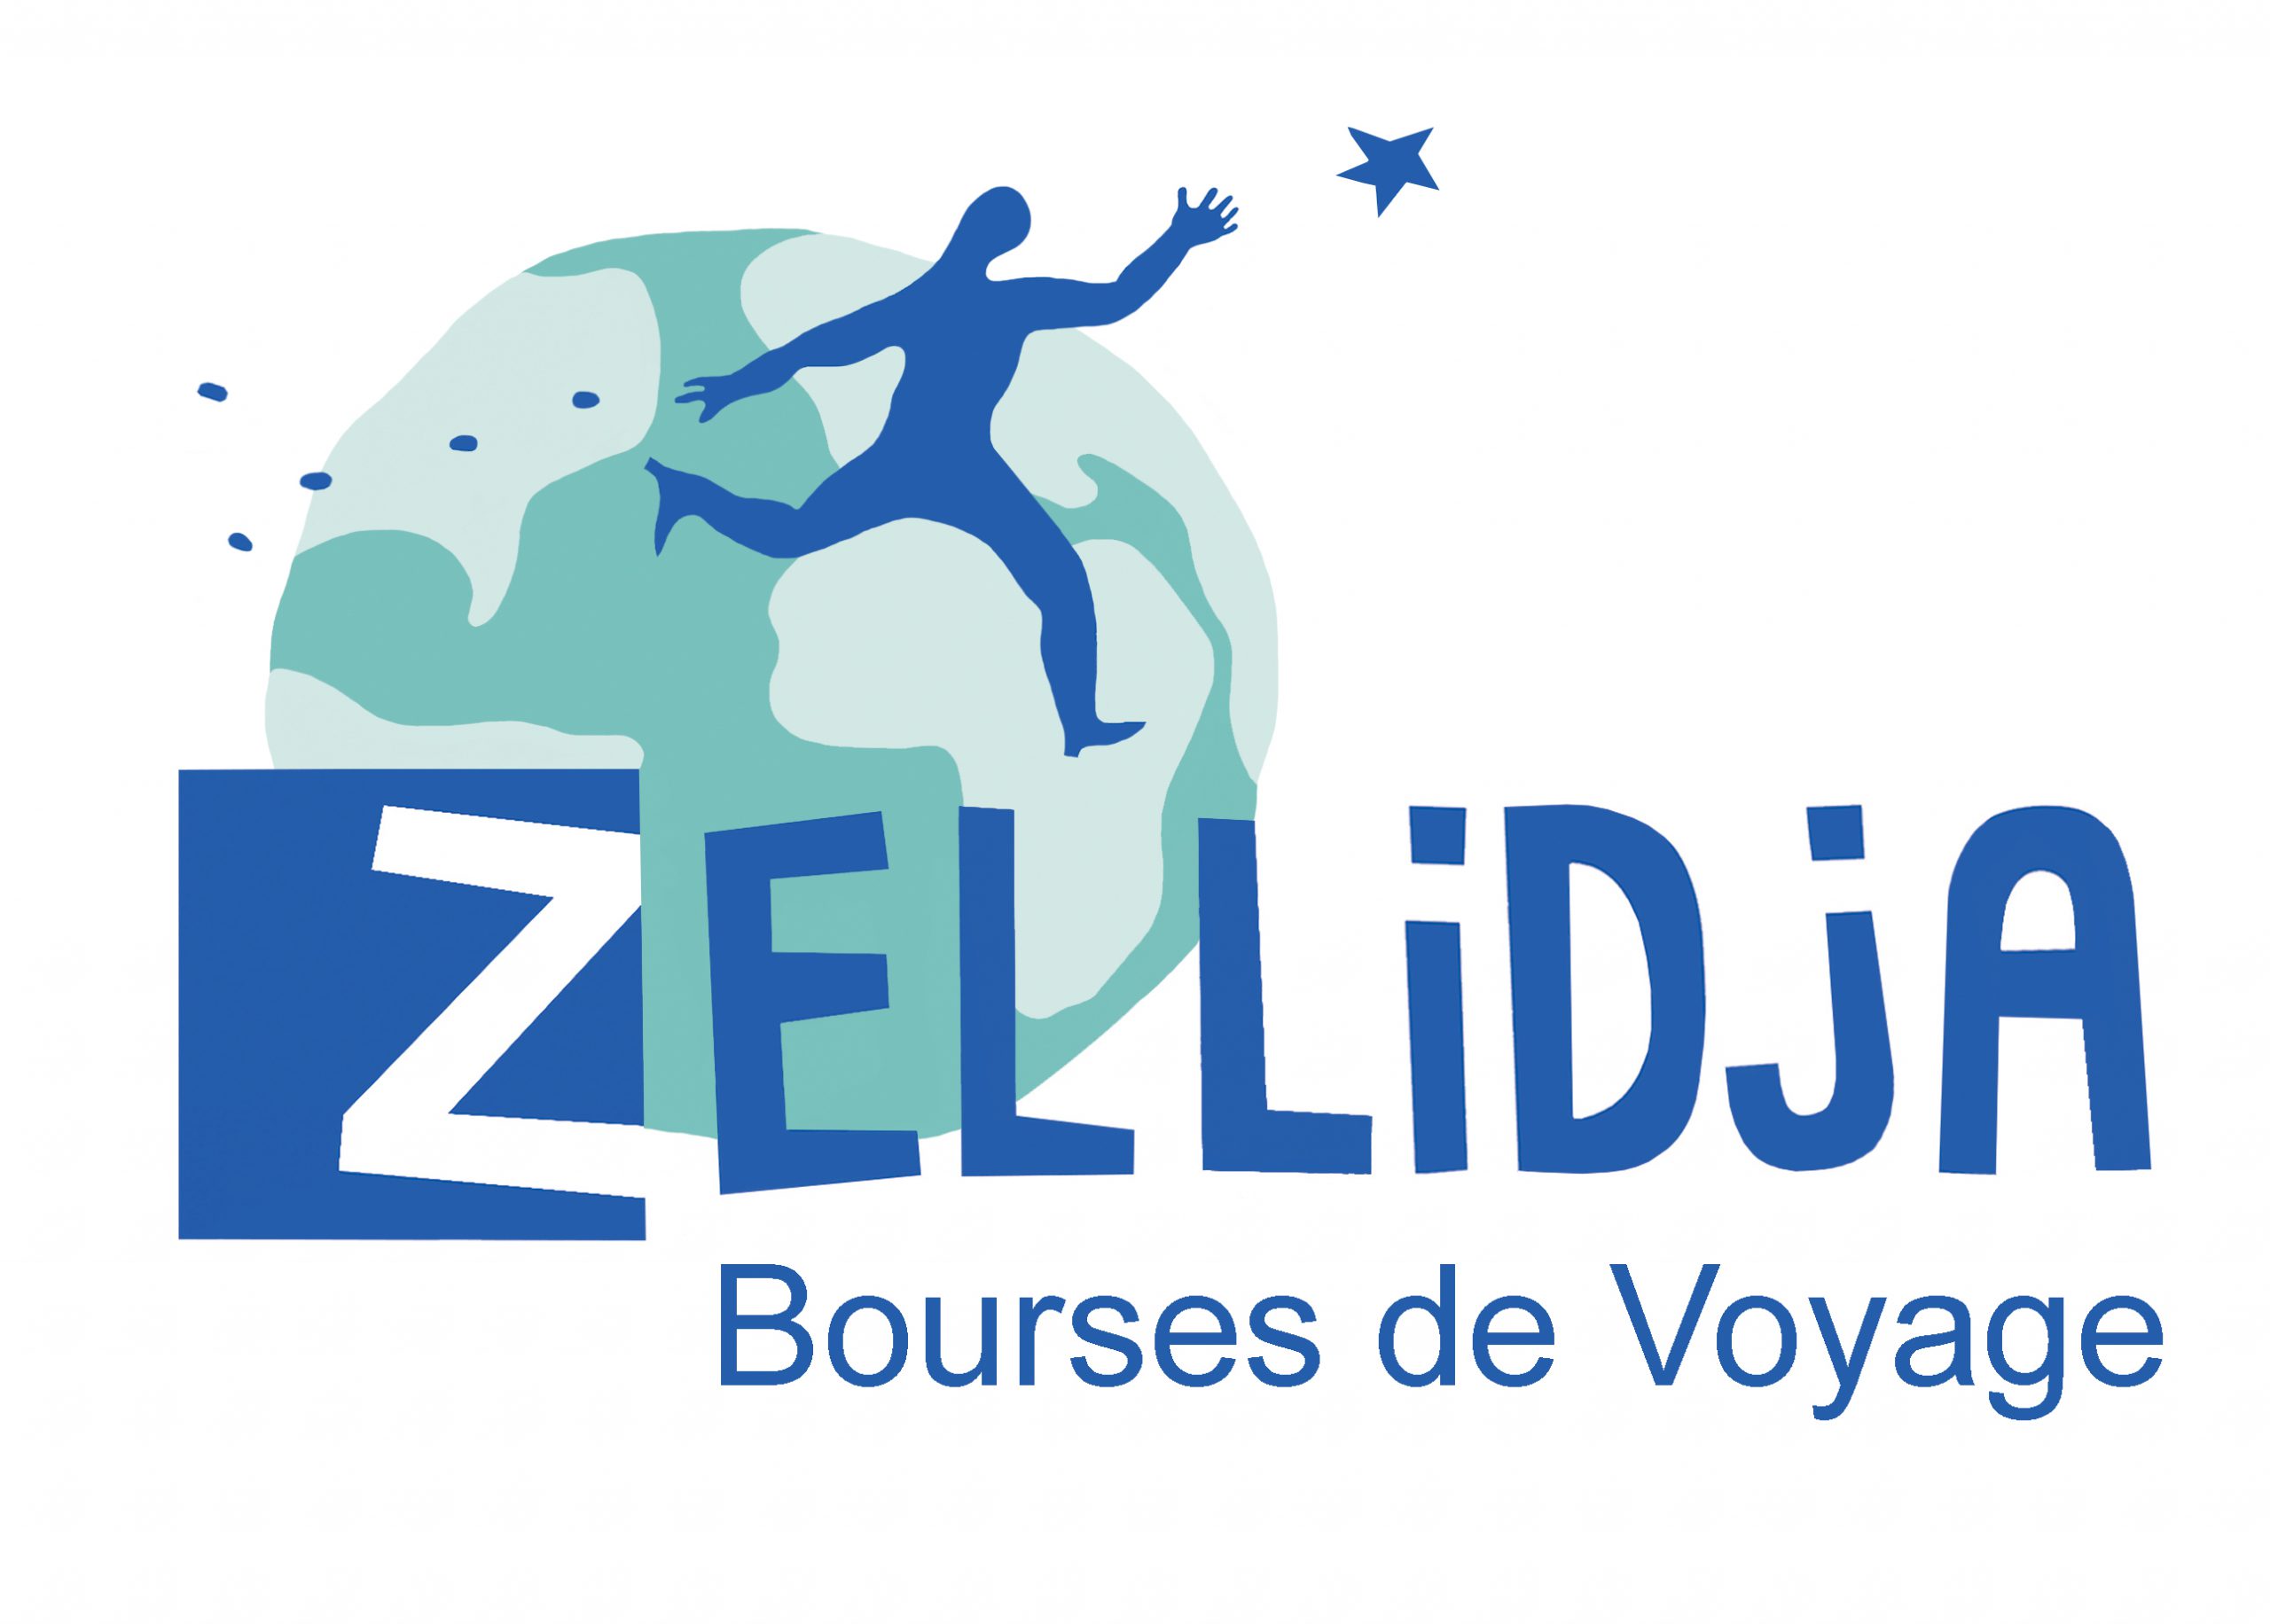 Bourse Zellidja : déposer votre dossier avant le 15 février 2022